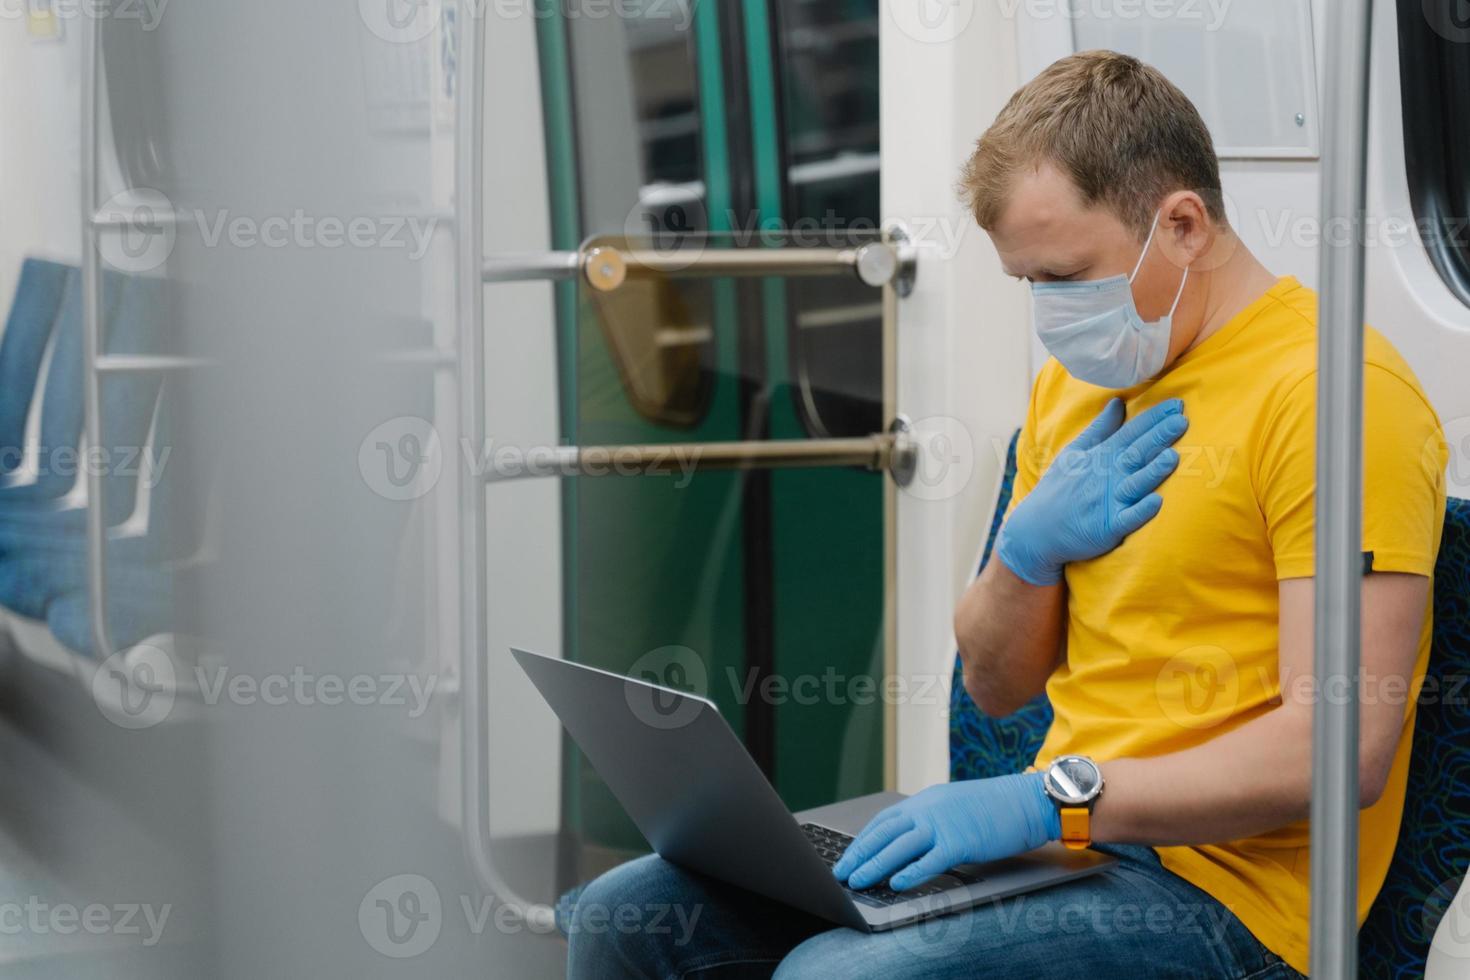 el hombre enfermo tiene problemas para respirar, síntomas de coronavirus, concentrado en una computadora portátil, usa máscara médica y guantes, viaja en transporte público. peligrosa propagación de enfermedades virales foto